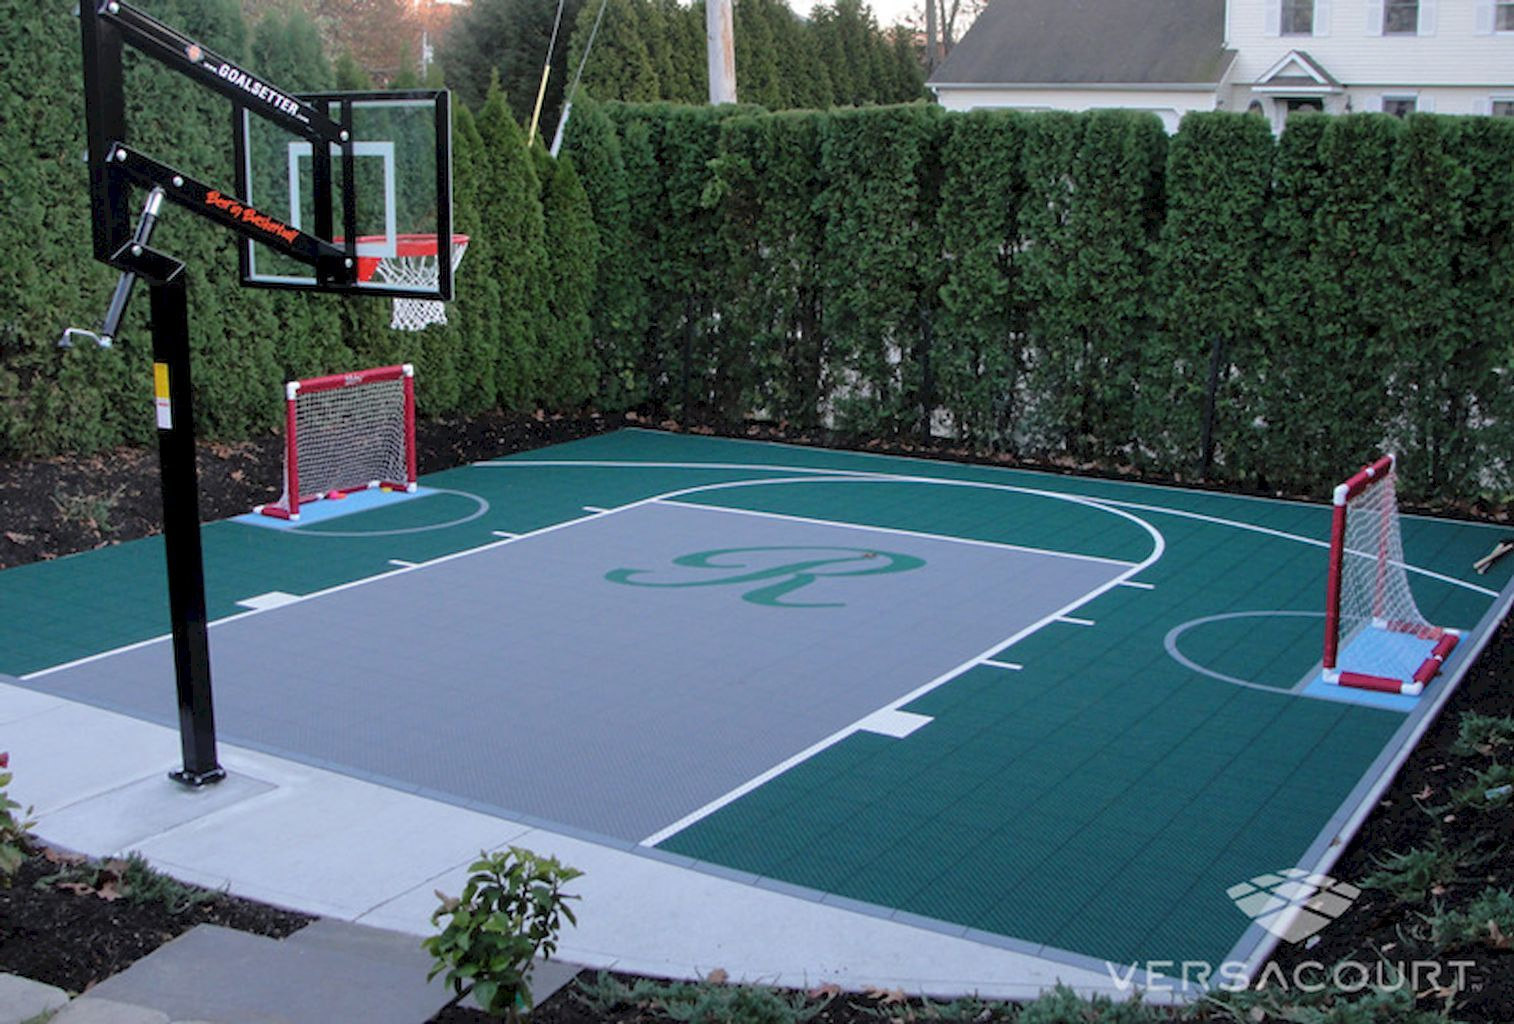 25.SIMPHOME.COM sport court backyard design ideas court backyard basketball